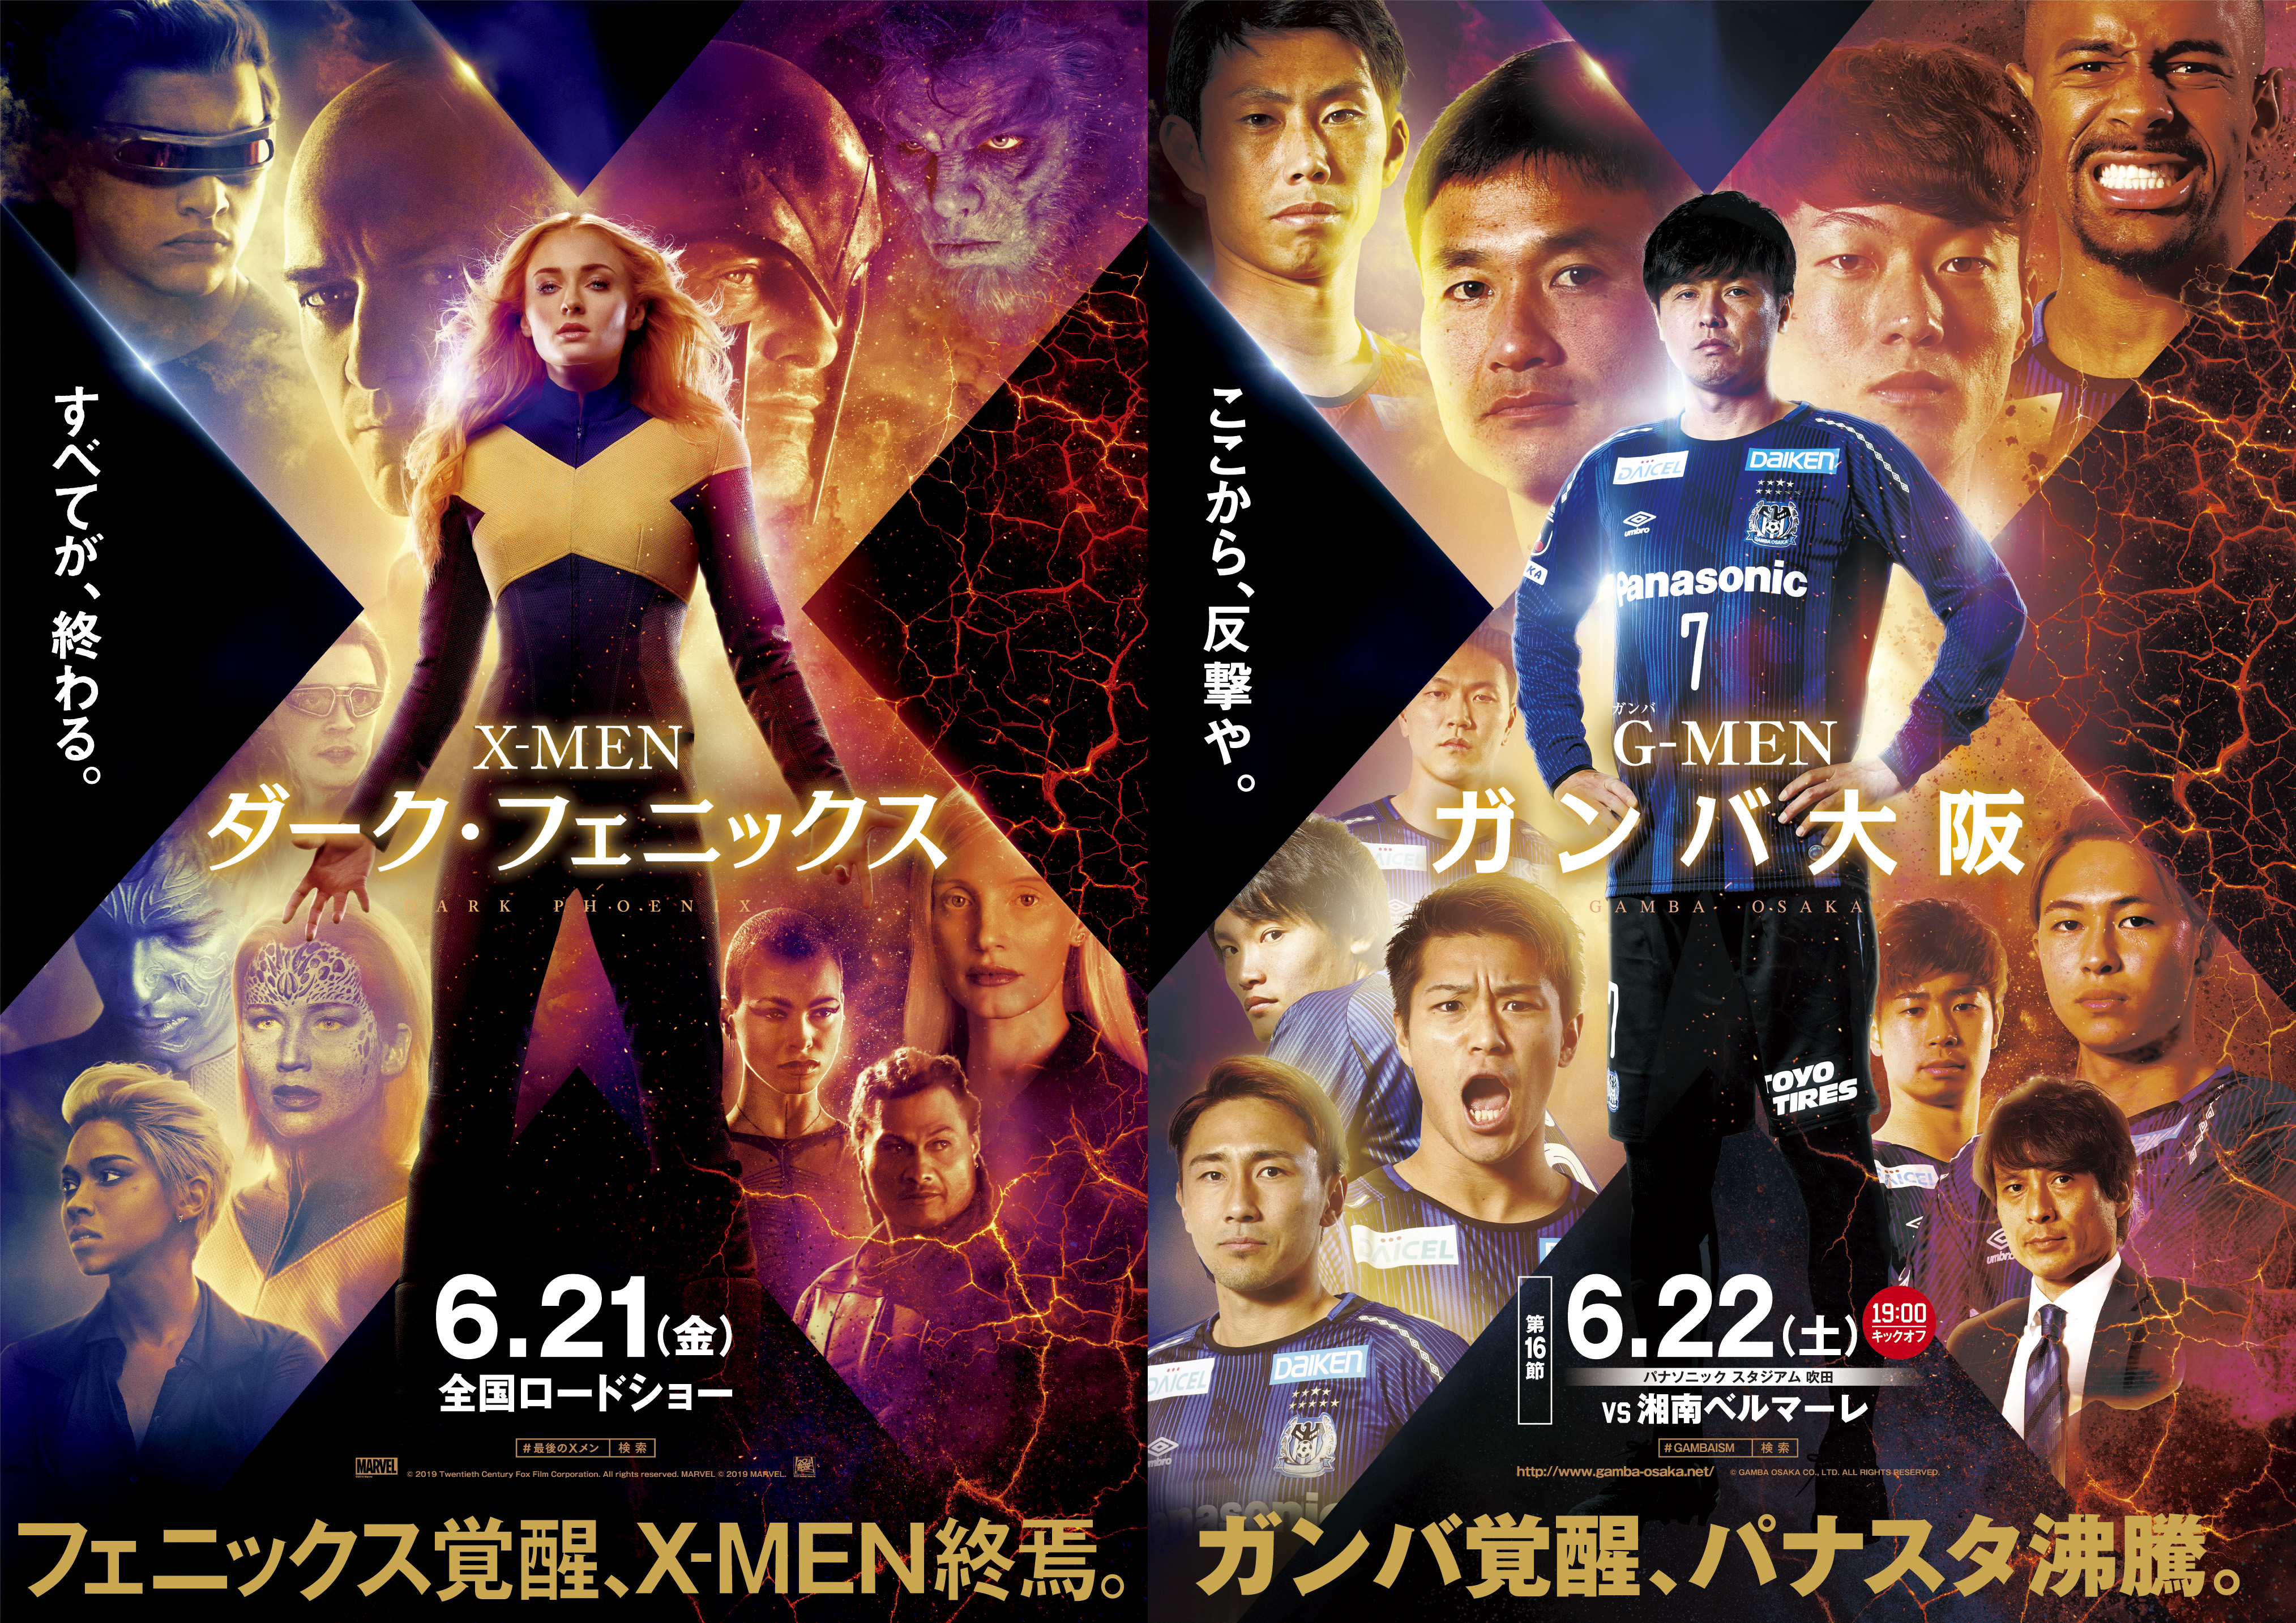 映画 X Men ダーク フェニックス とガンバ大阪のコラボビジュアルを公開 株式会社ガンバ大阪のプレスリリース